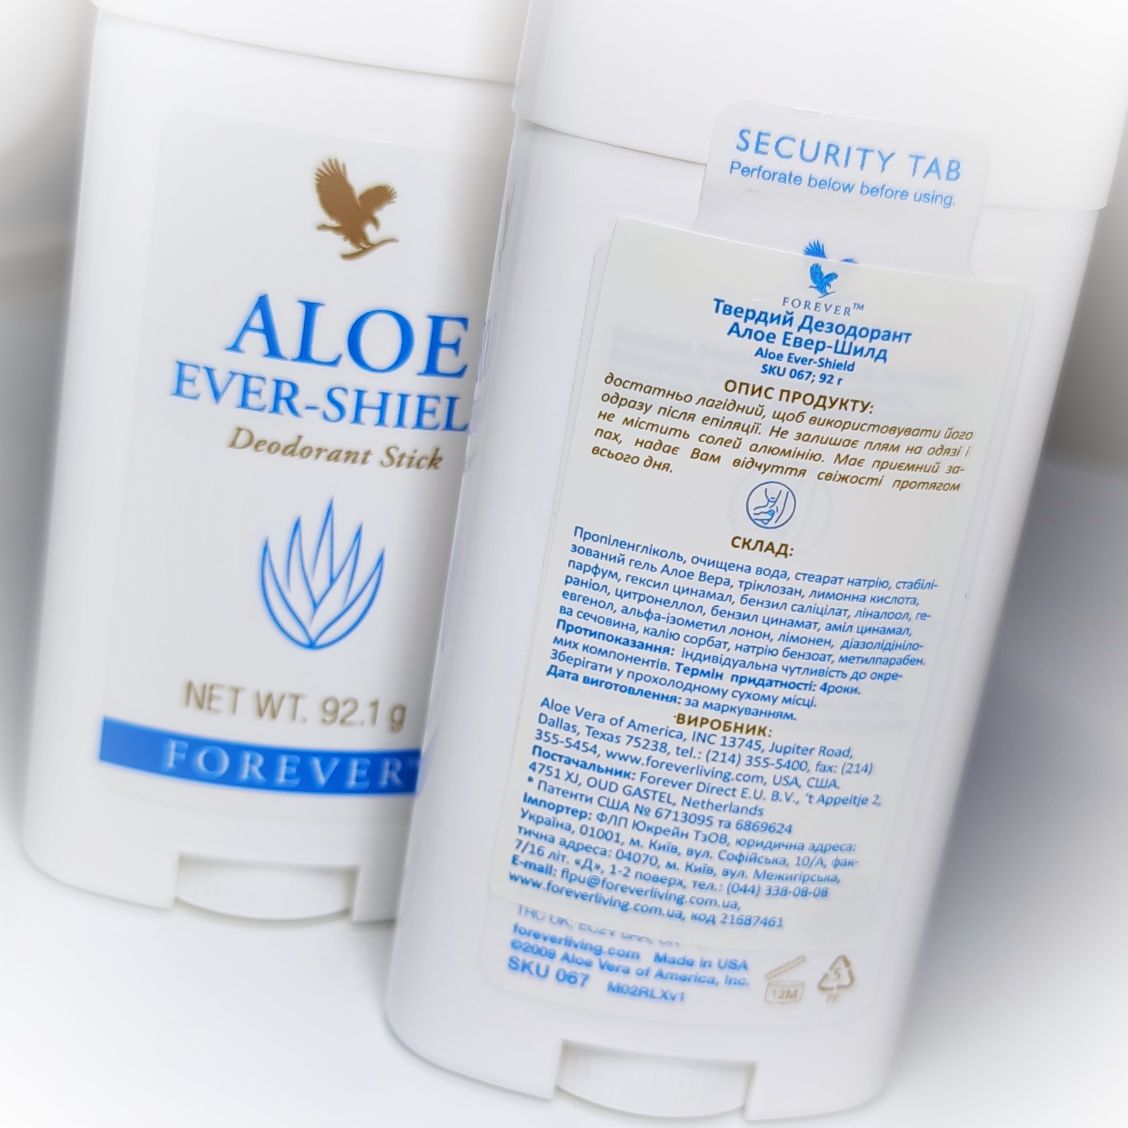 Дезодорант Алоє Евер-Шилд Aloe Ever-shield Forever living products